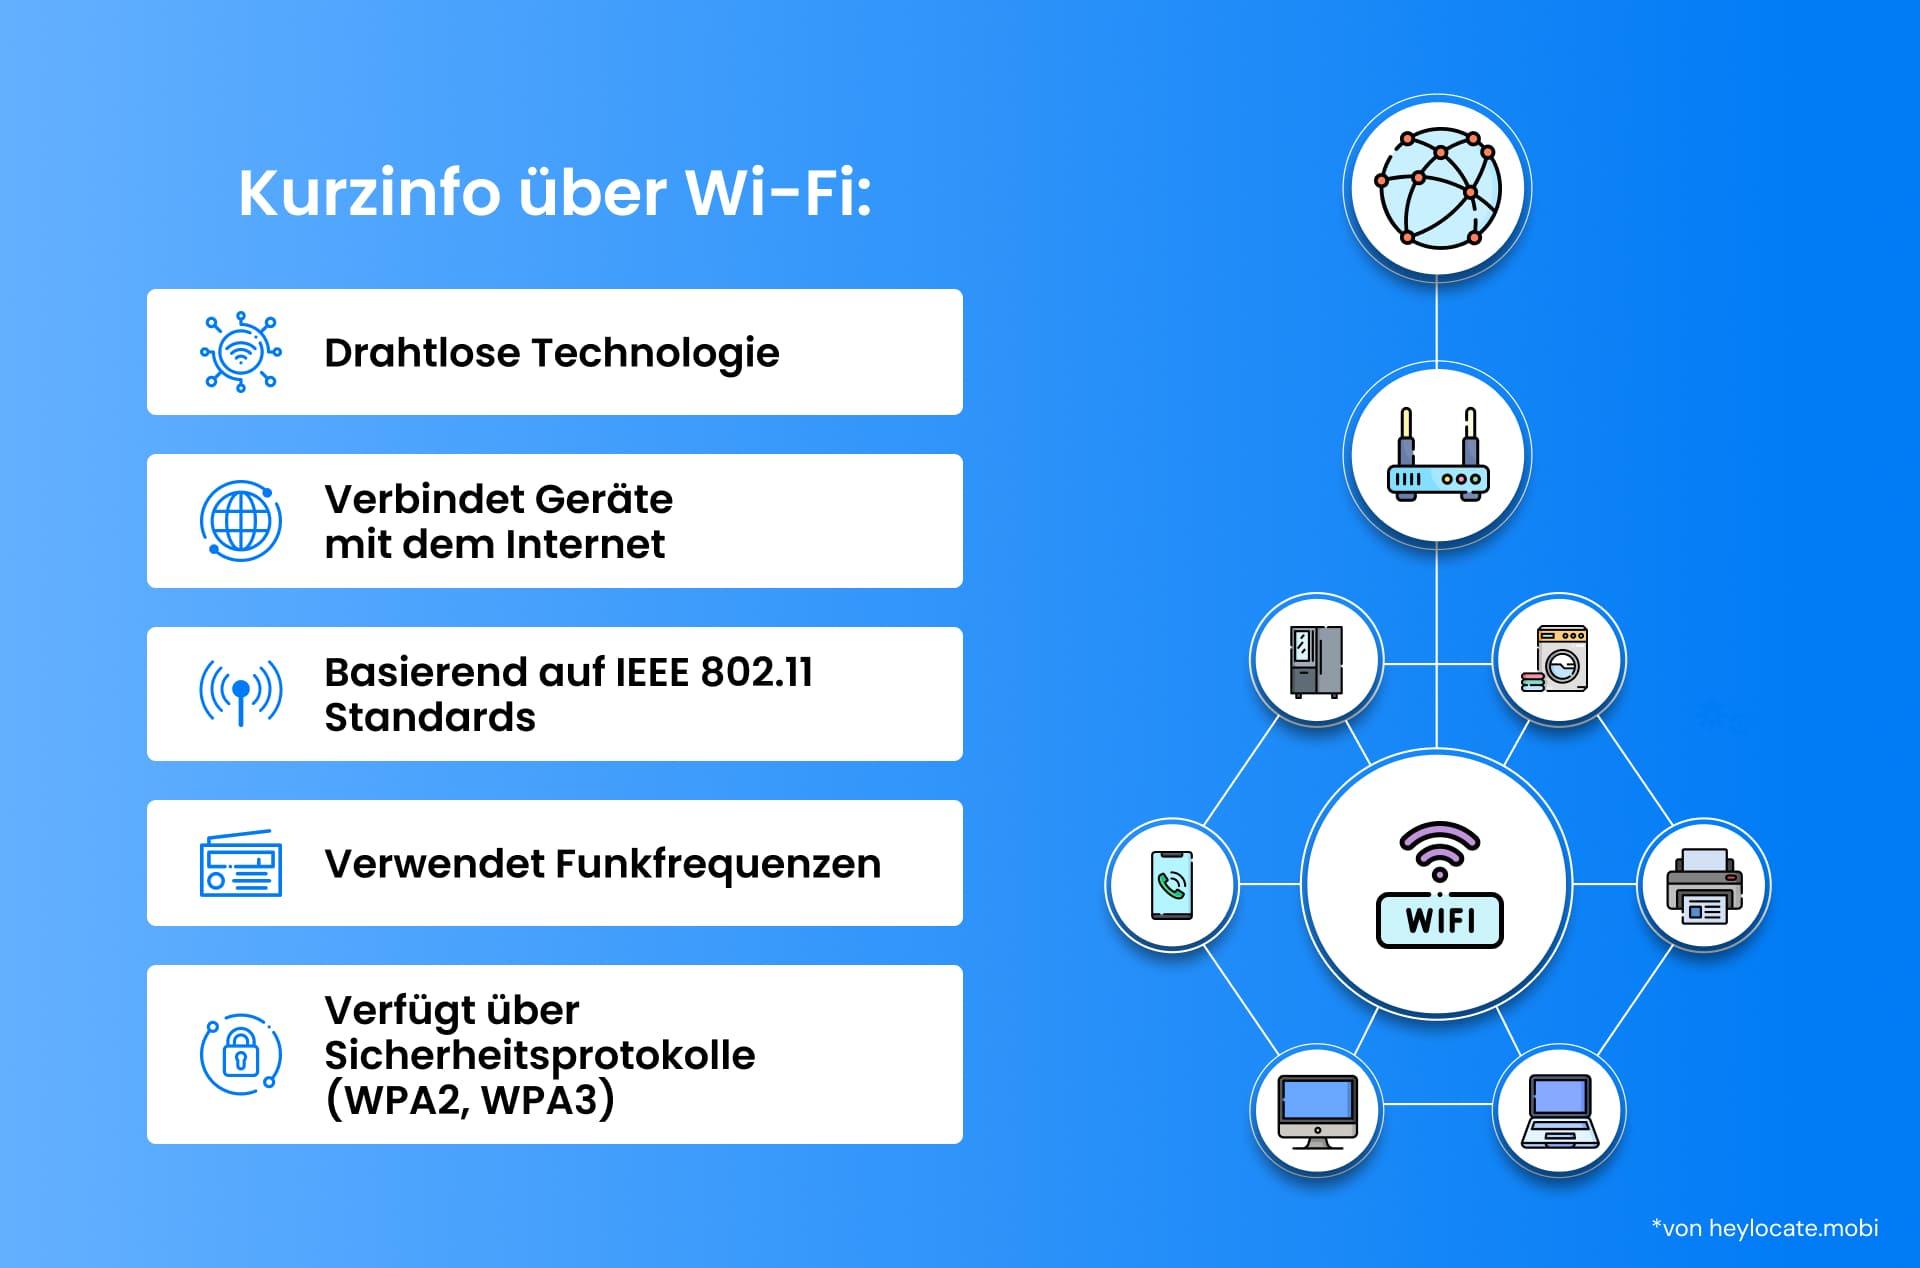 Eine Infografik, die die Wi-Fi-Technologie erklärt, einschließlich ihrer Verbindung zu Geräten, Standards, Frequenznutzung und Sicherheitsprotokollen